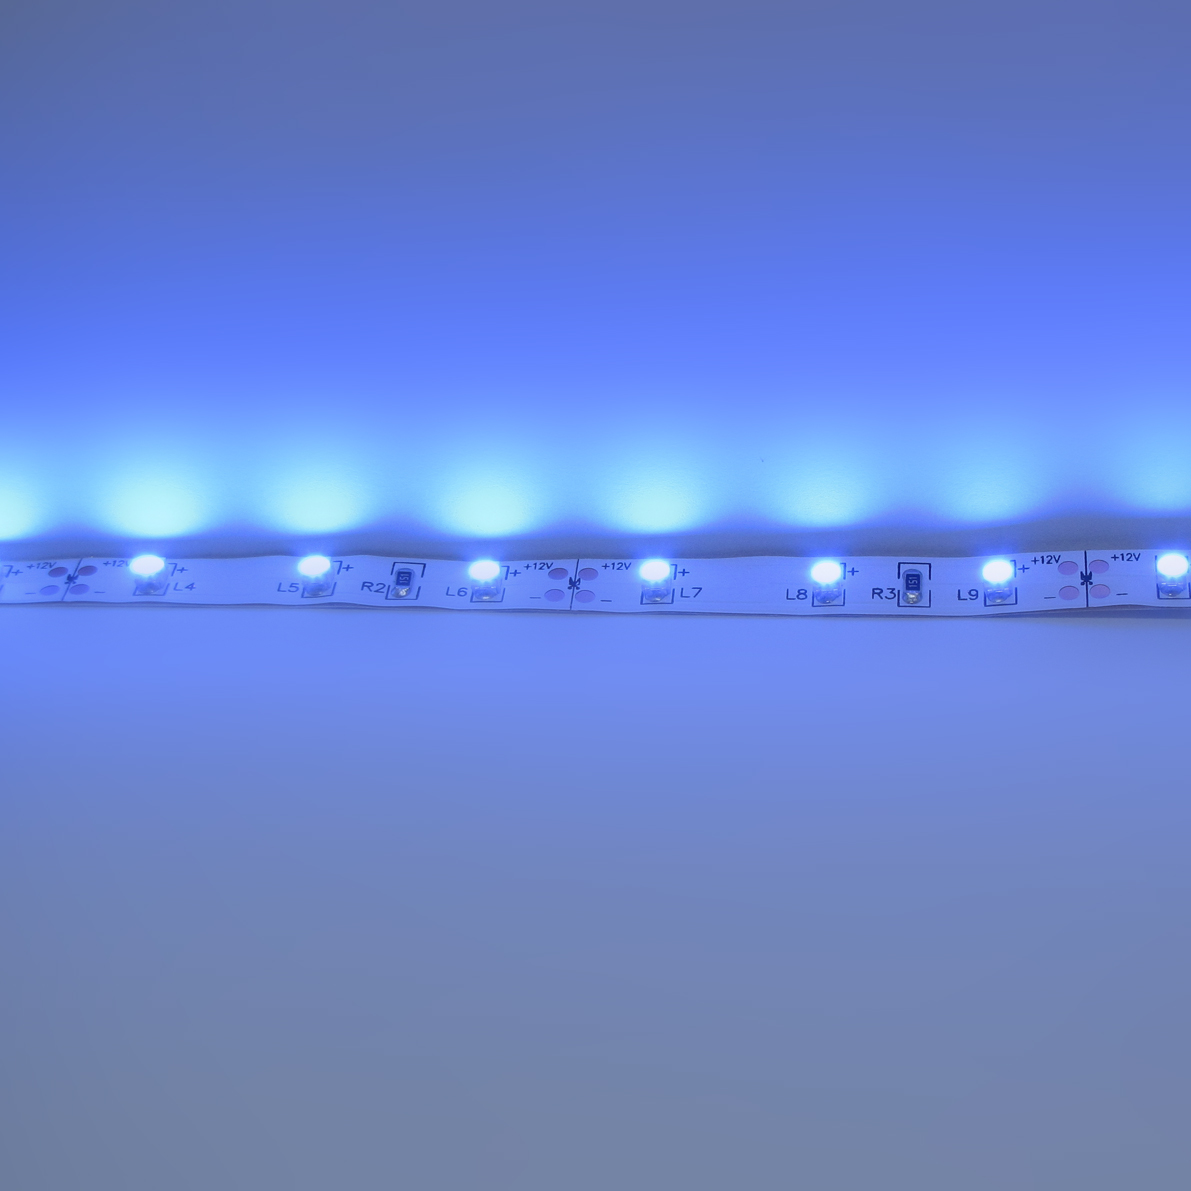 светодиодная лента standart pro class, 3528, 60 led/m, blue, 12v, ip33, артикул 26950